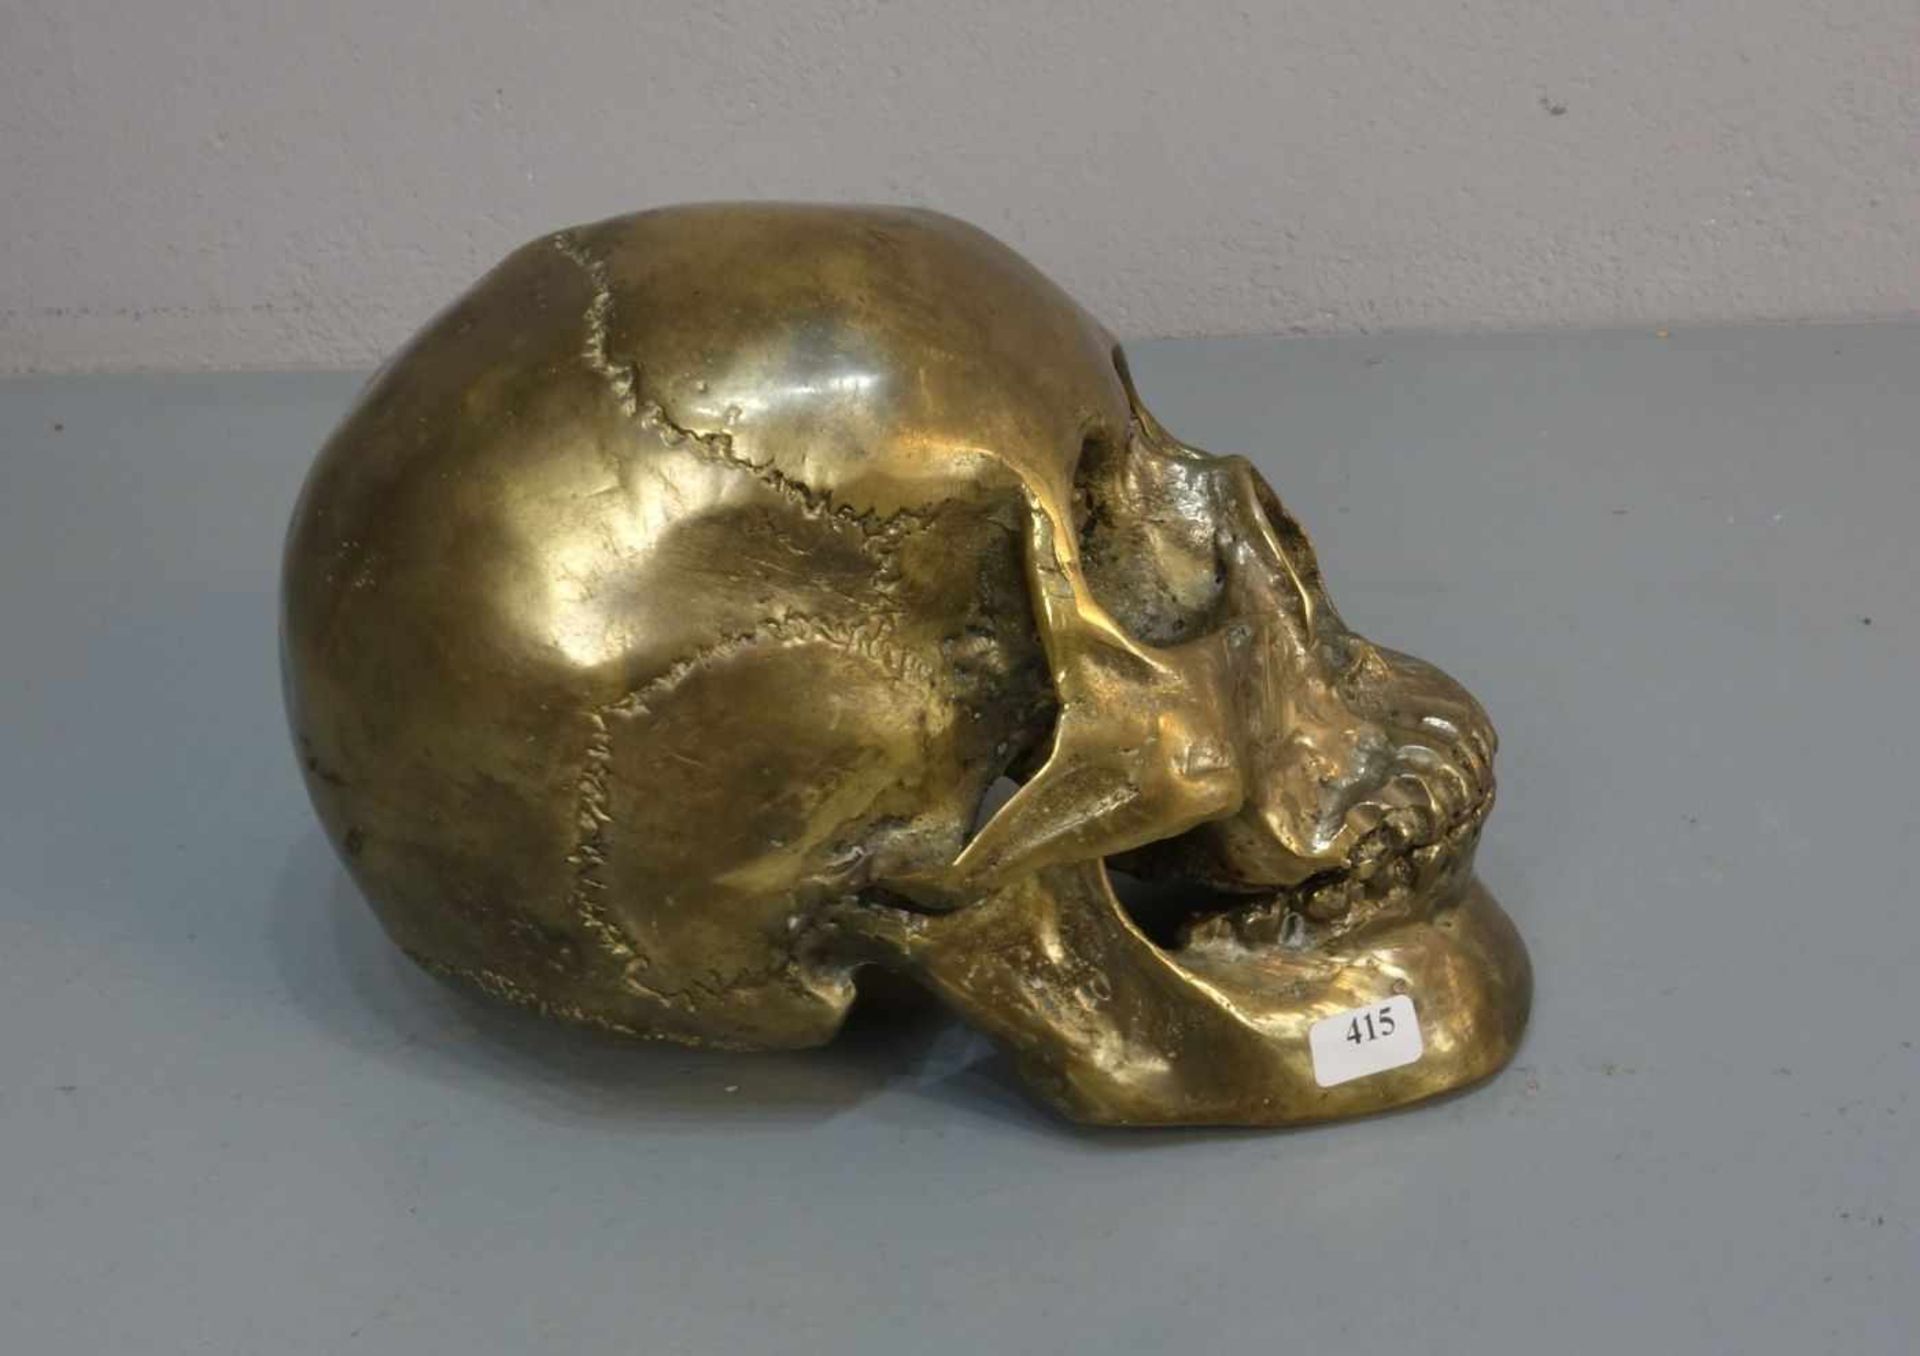 SKULPTUR / sculpture: "Schädel / Memento Mori", skull, bronziertes Metall. Vollplastisch und - Bild 2 aus 4